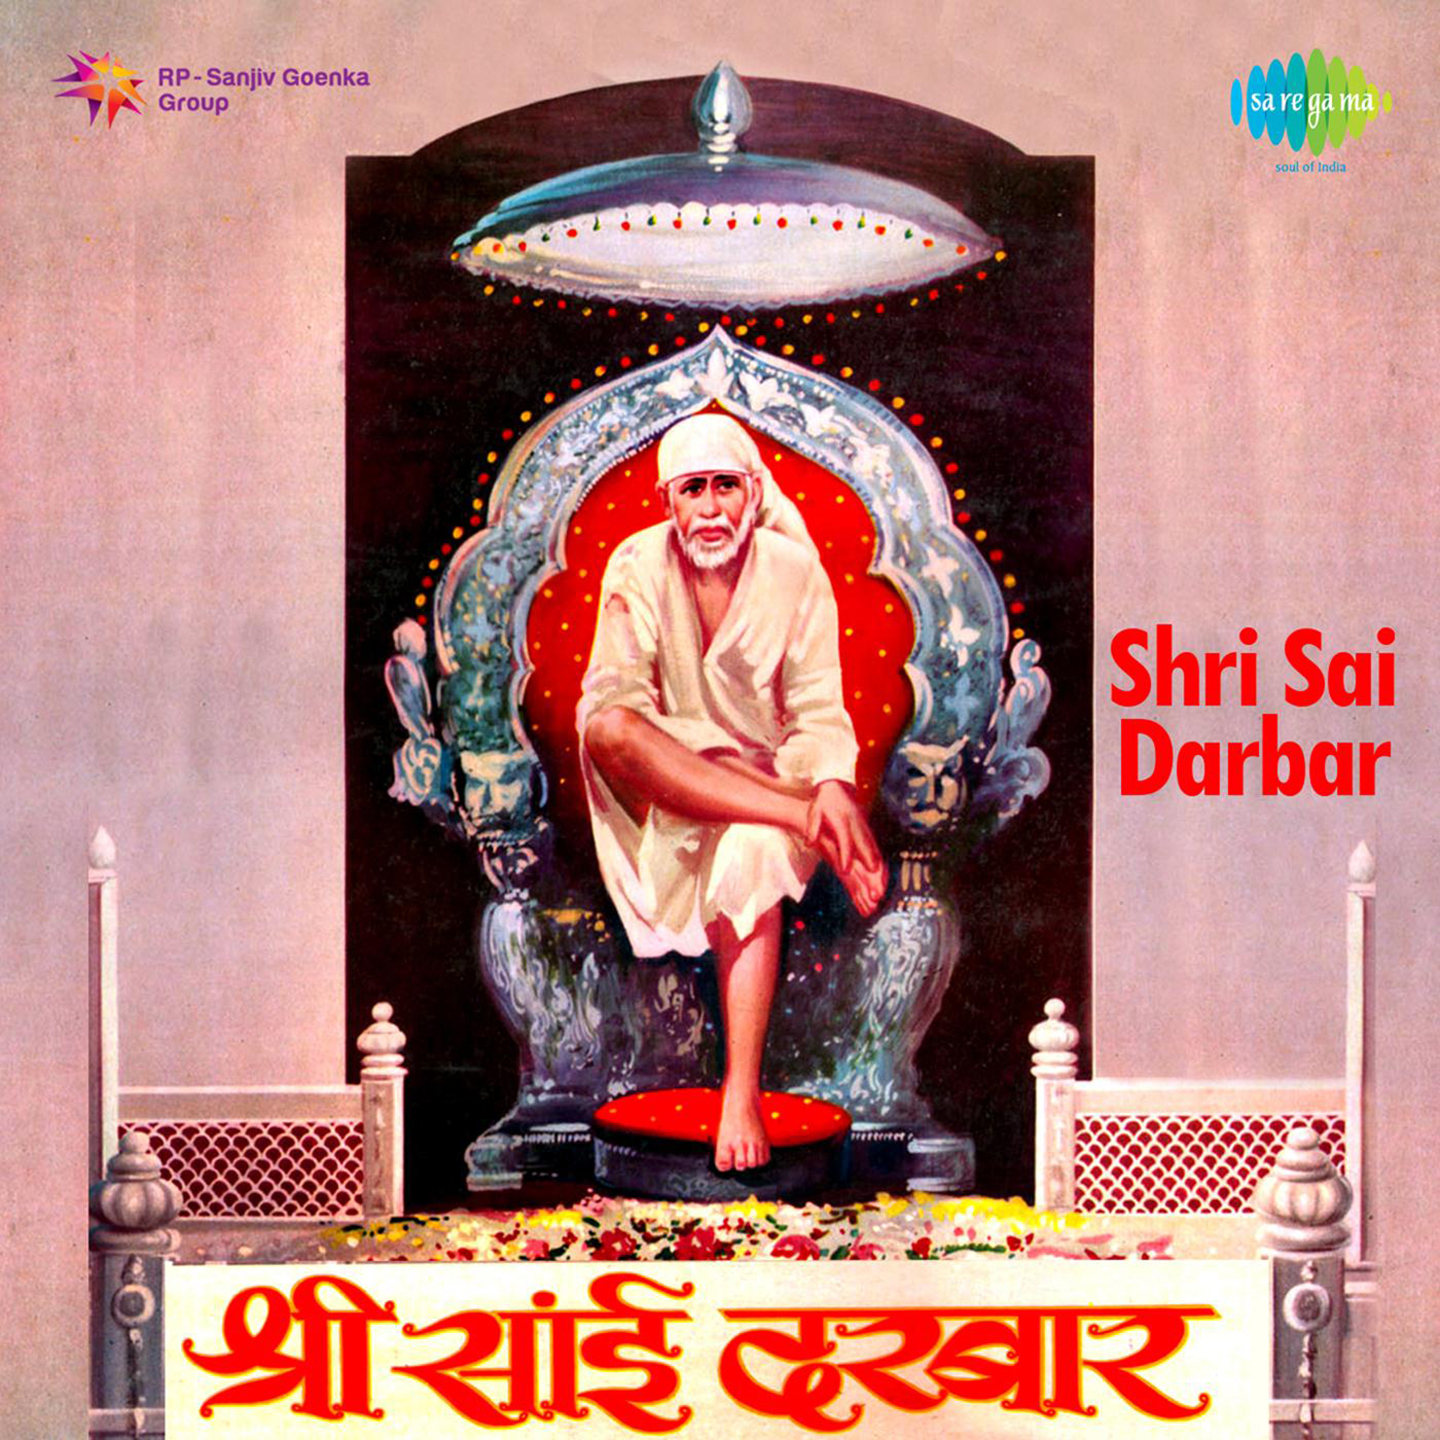 Shri Sai Darbar